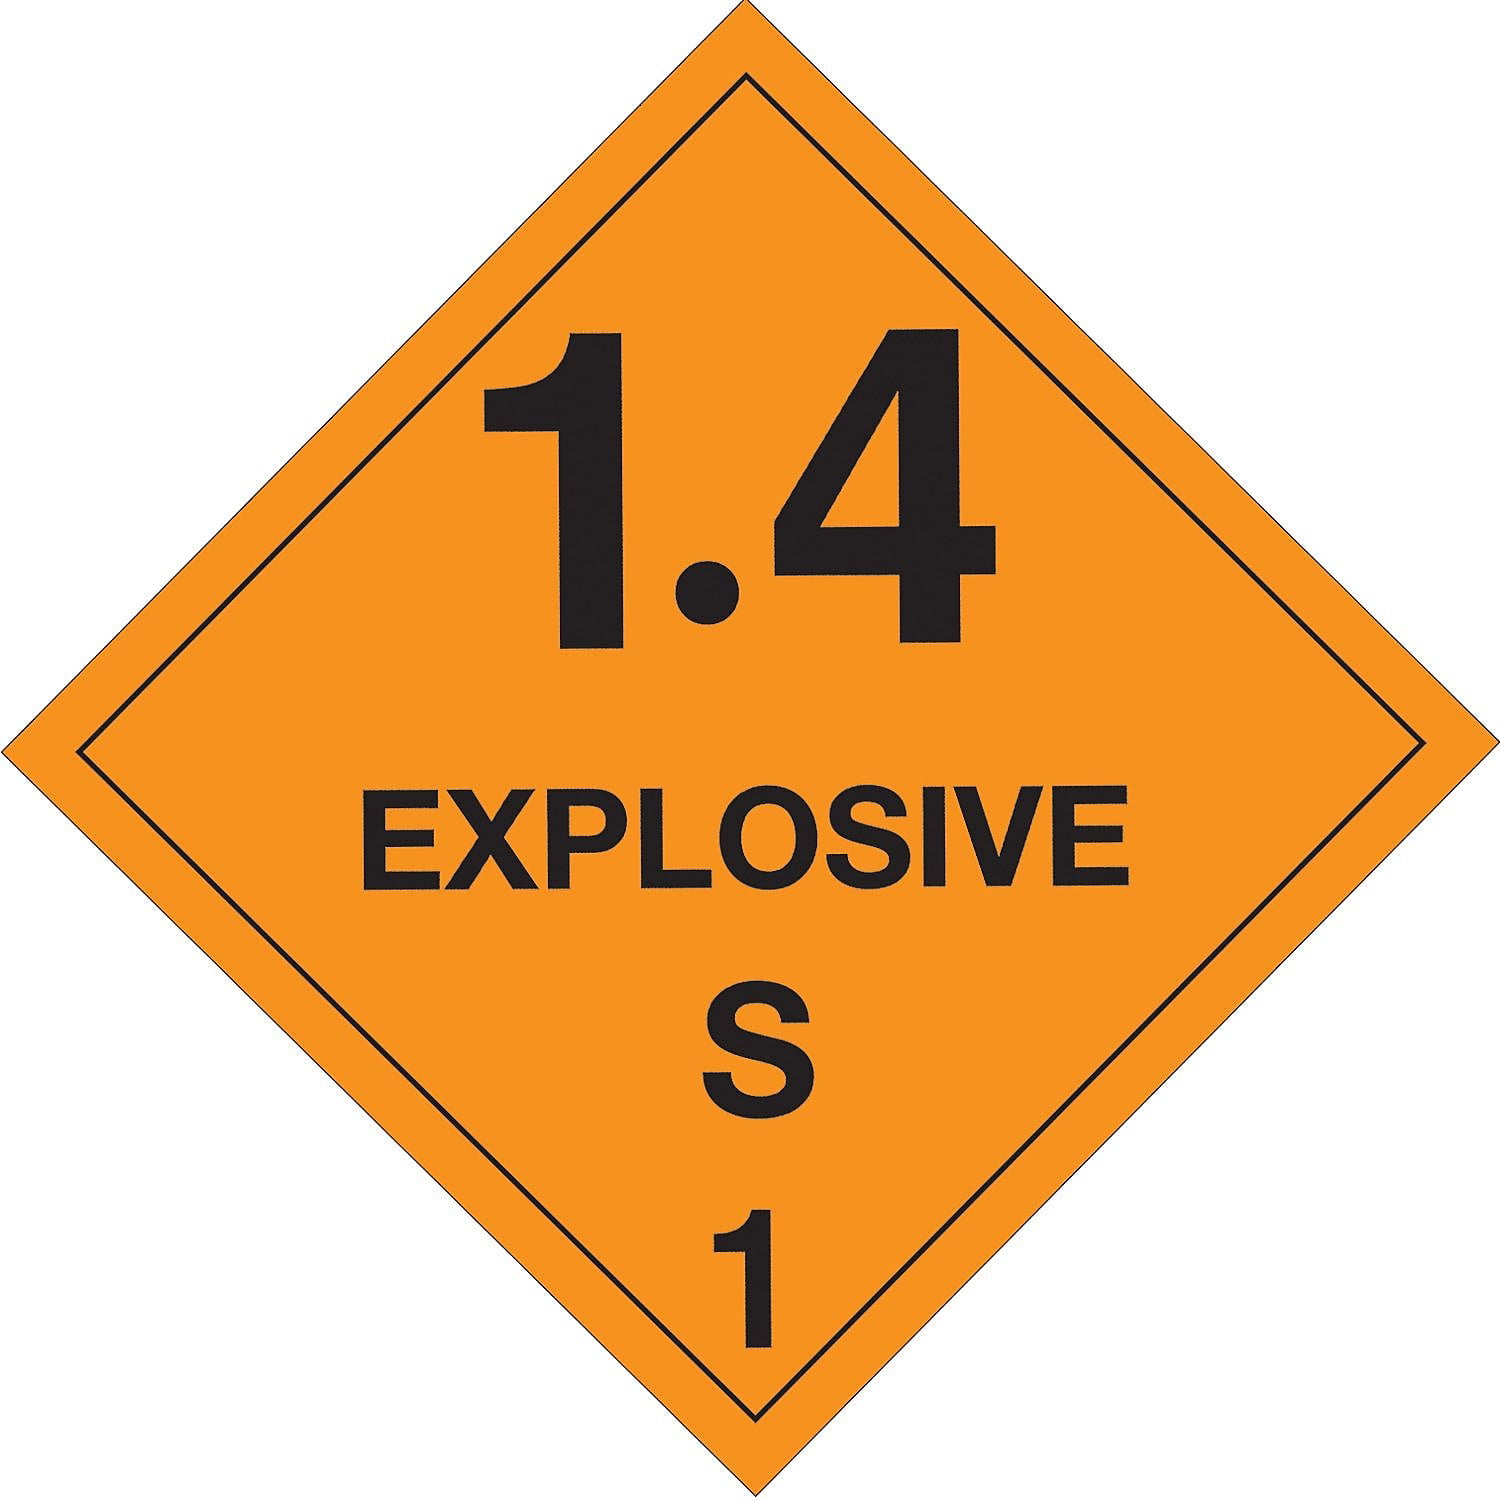 UPC 848109016696 product image for Tape Logic DL5091 4 x 4 in. - 1.4 - Explosive - S 1 in. Labels, Orange & Black - | upcitemdb.com